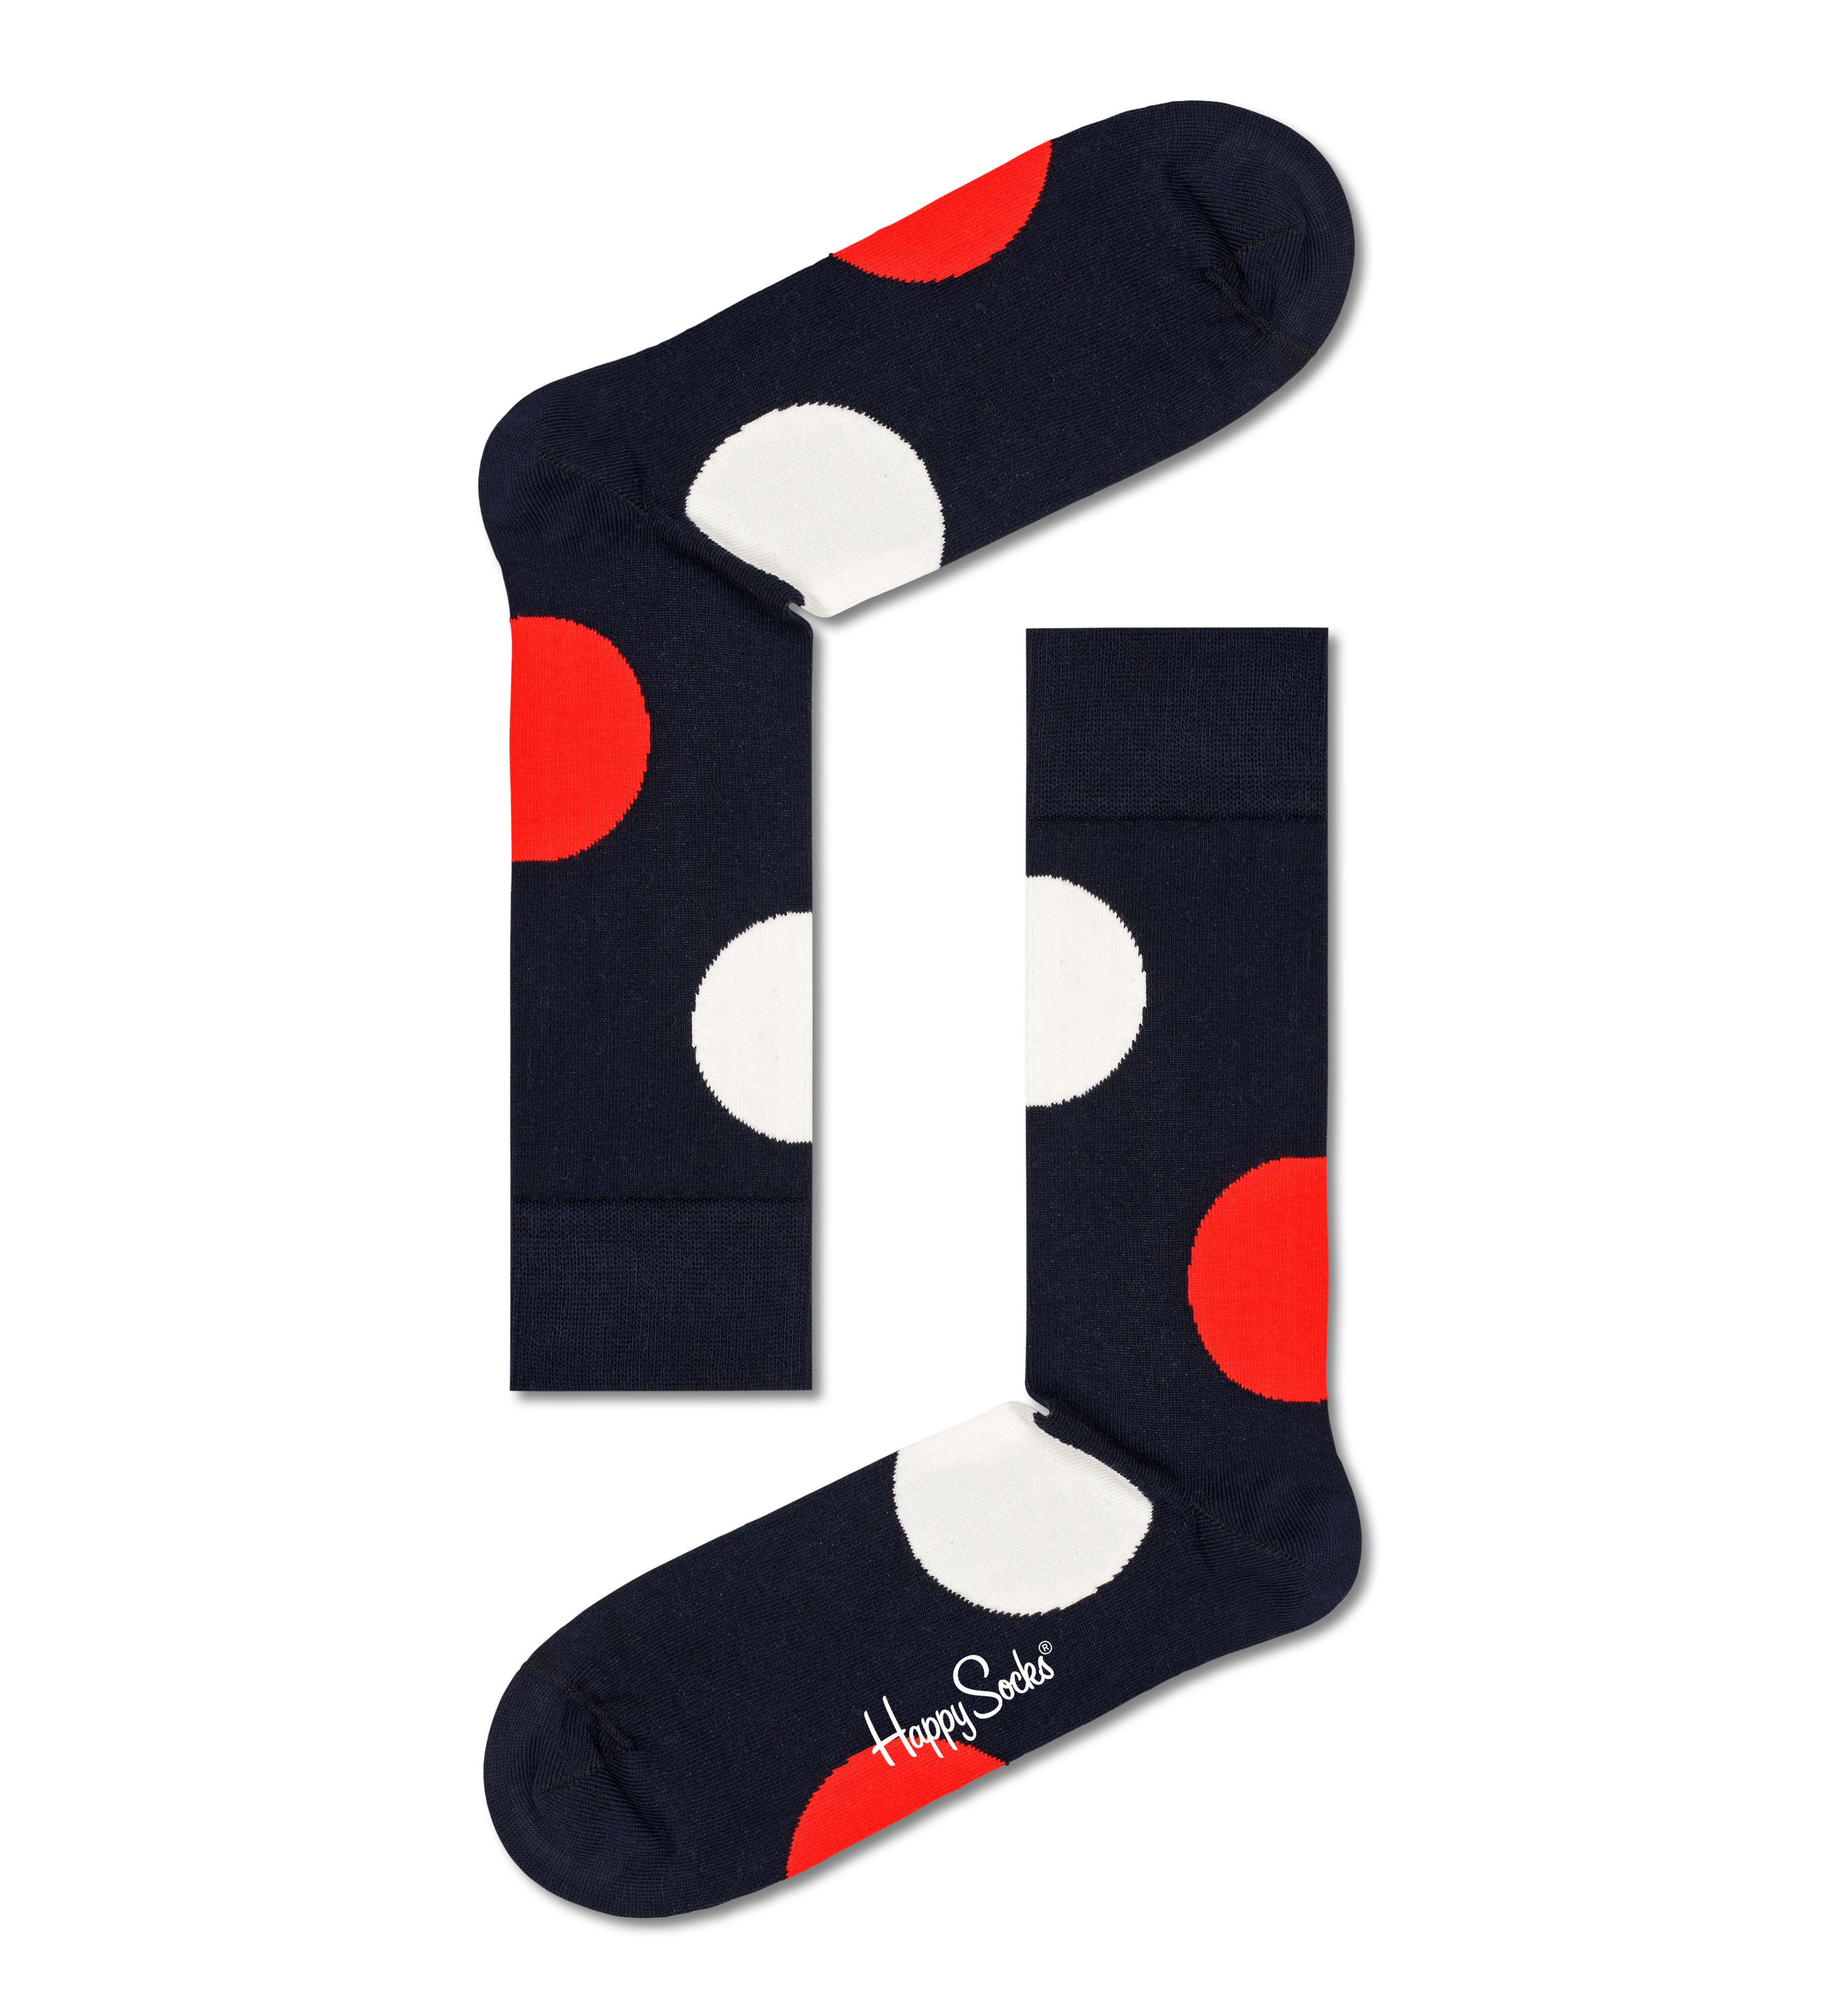 Happy Socks 4-Pack Multi-color Socks - 40$, XMIX09-6050